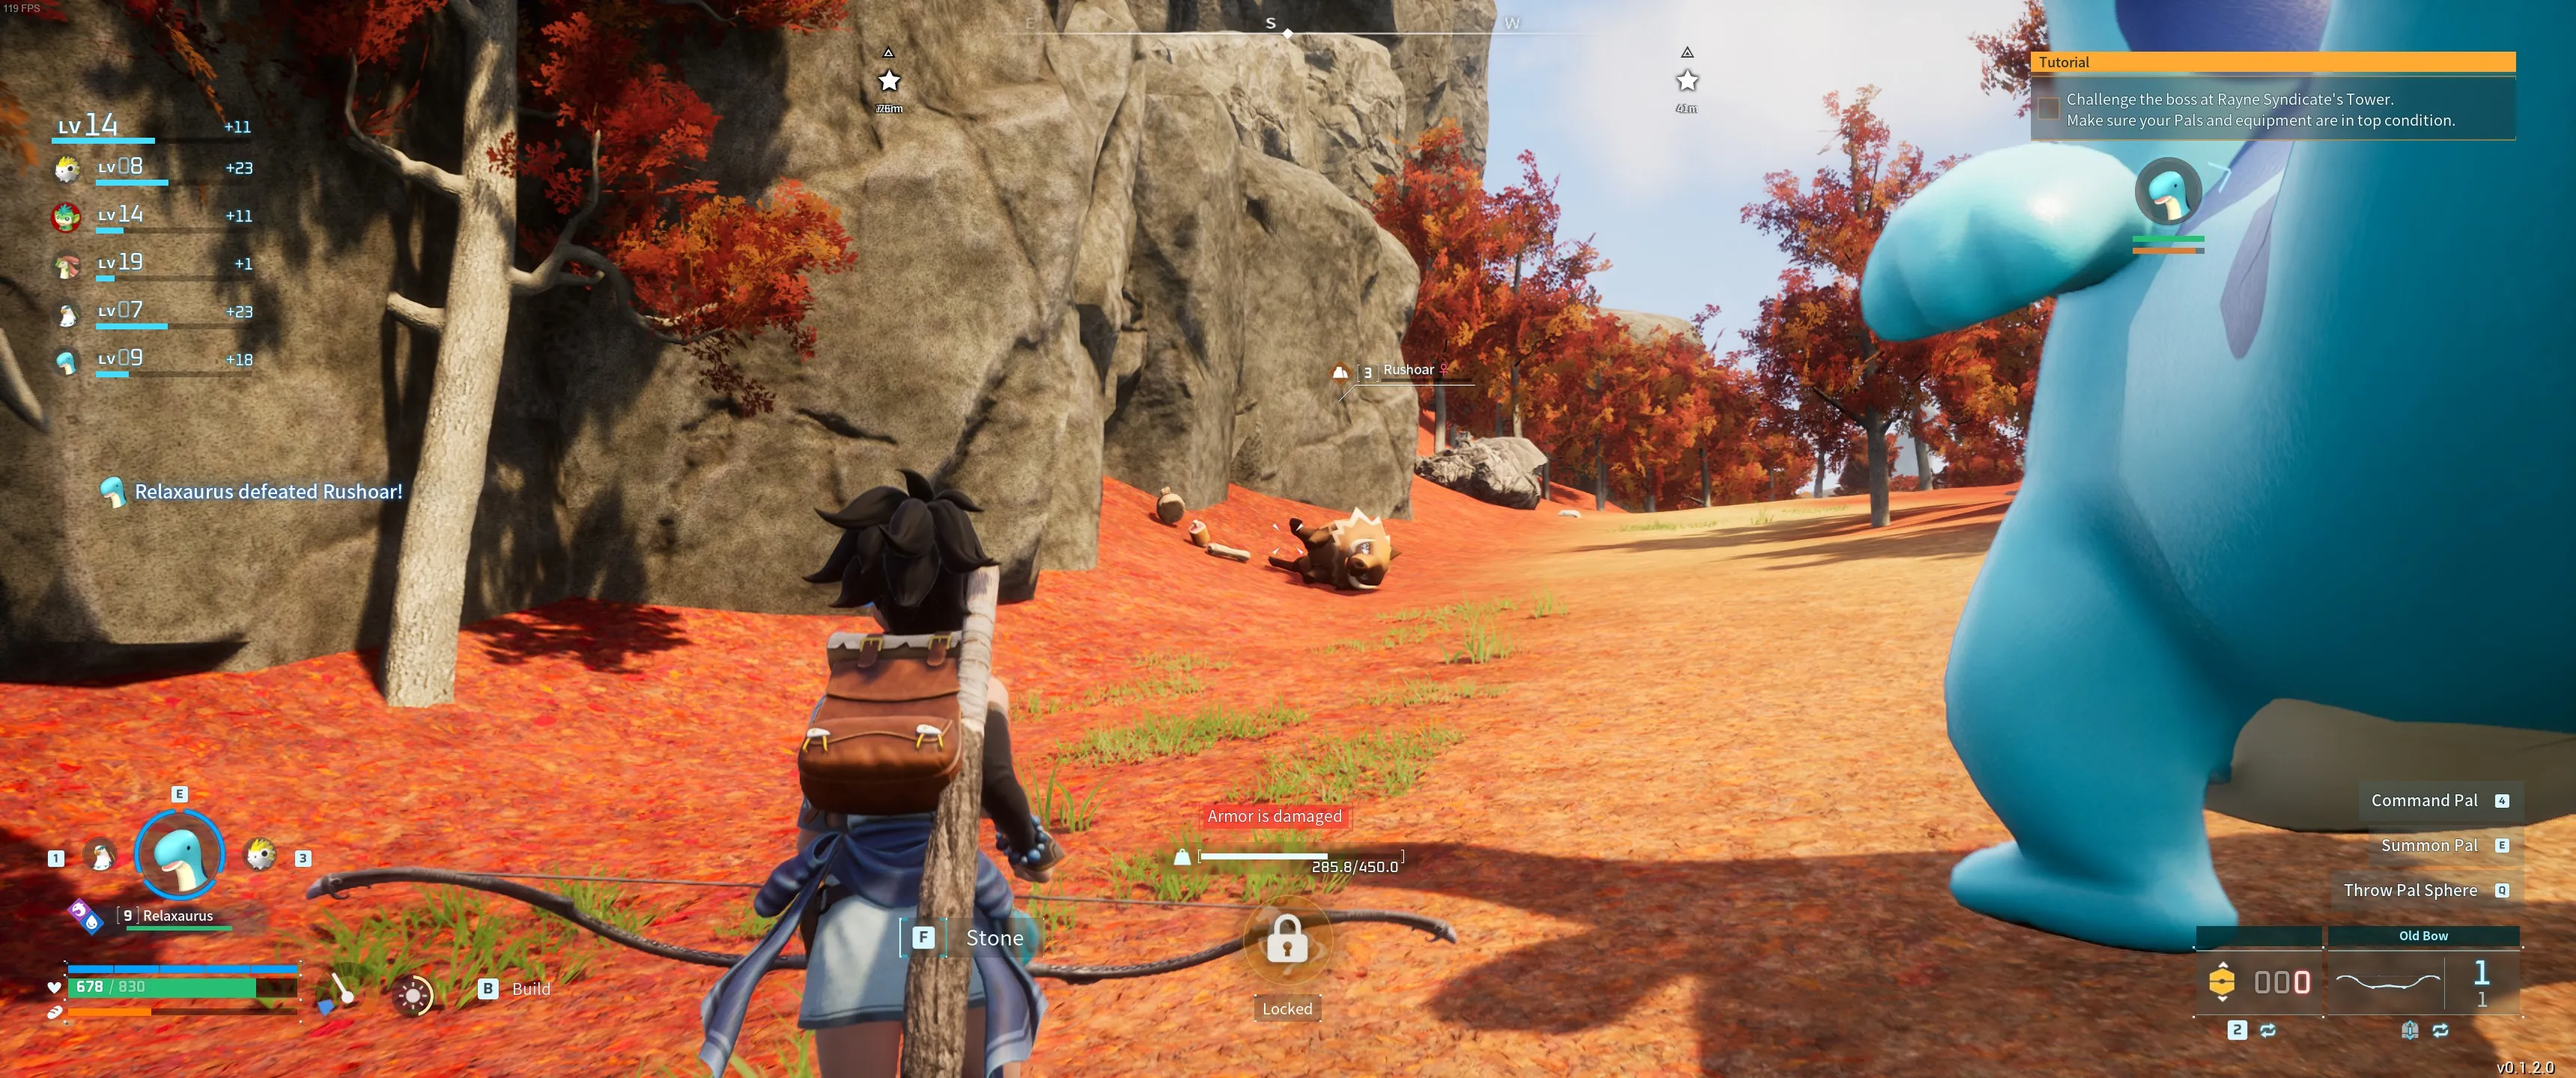 Palworld：玩家角色在成功猎杀猛冲野猪之后获得皮革的图像